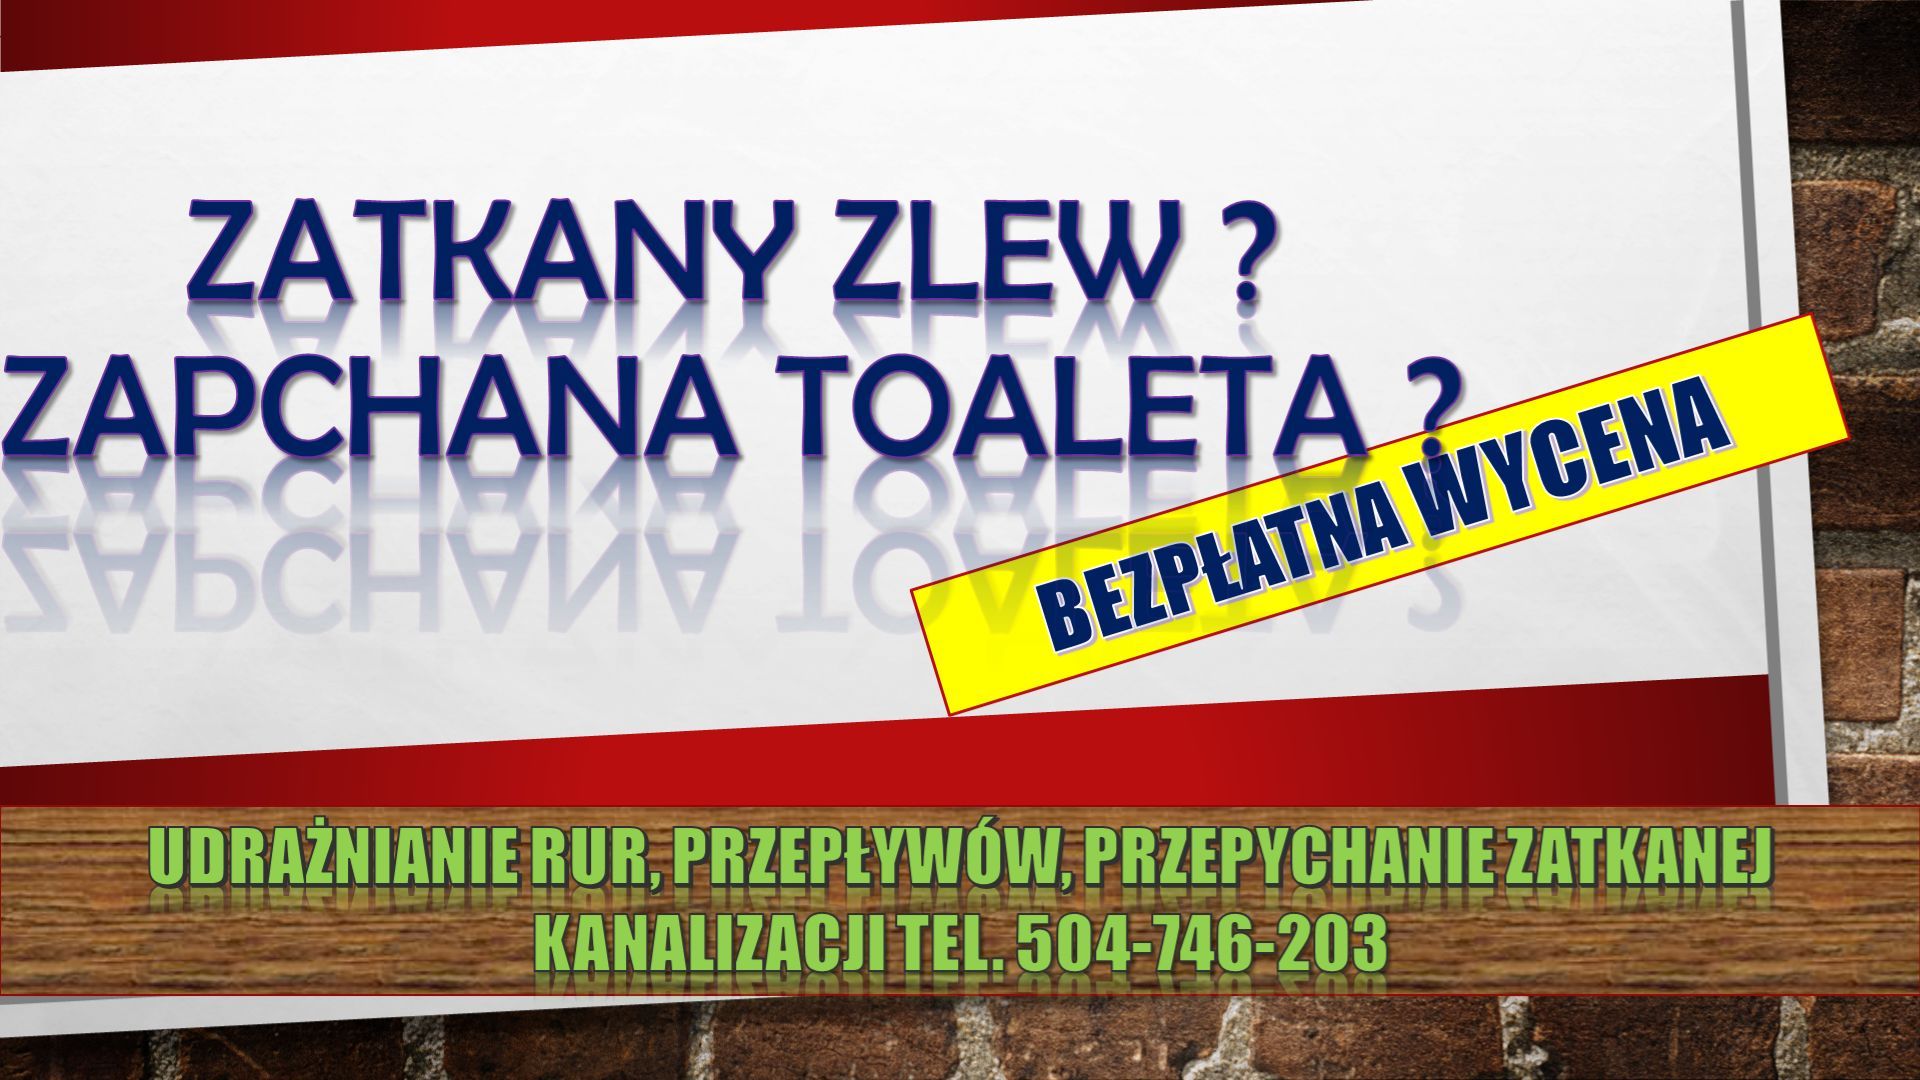 Przepychanie toalet, cena, tel. 504-746-203,Wrocław. Udrażnianie odpływu Wrocław - Zdjęcie 1